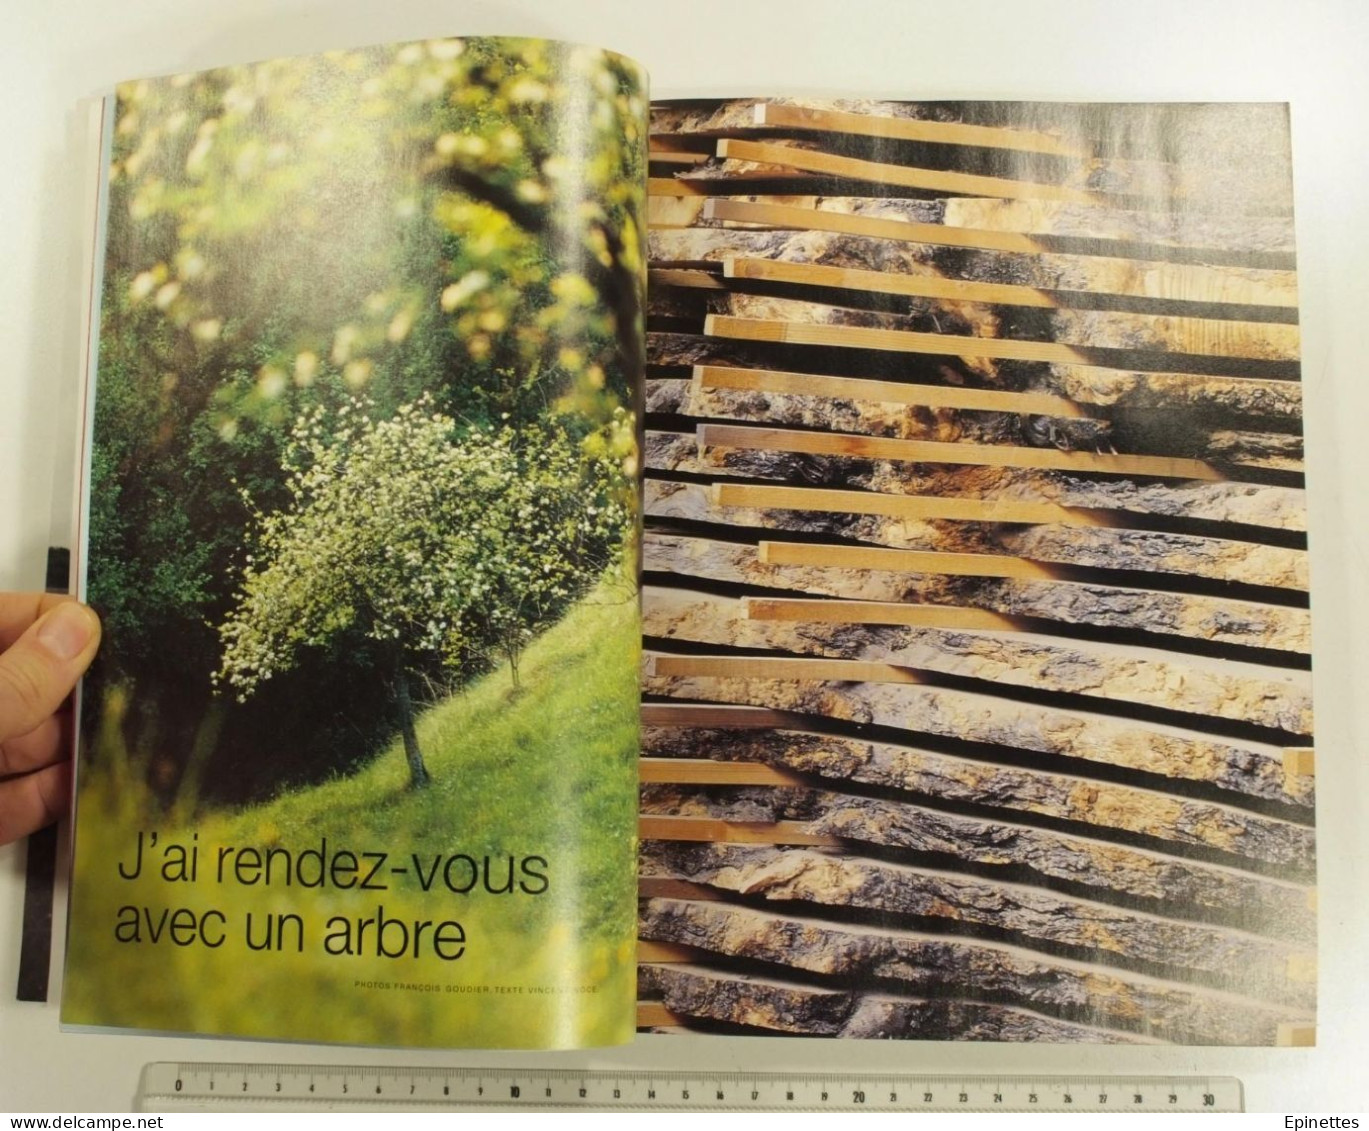 Lot 2 n°s Le Monde d'Hermès, n° 34, 1999 vol. 1 et n° 39, automne-hiver 2001-2002